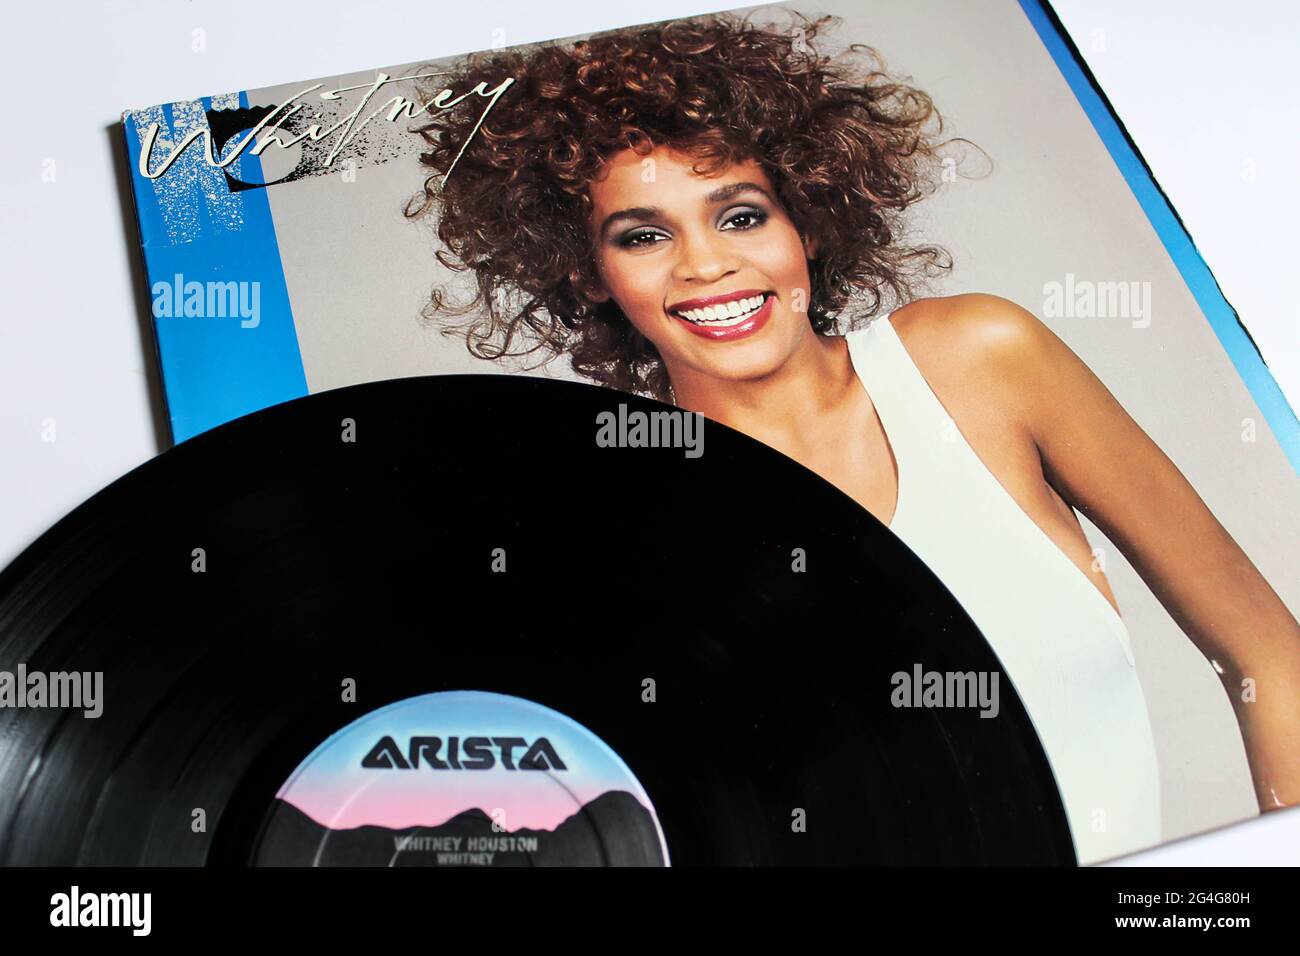 Dance-Rock, RnB und Pop-Künstler, Whitney Houston Musikalbum auf Vinyl-Schallplatte. Selbstbetitelt: Whitney Albumcover Stockfoto